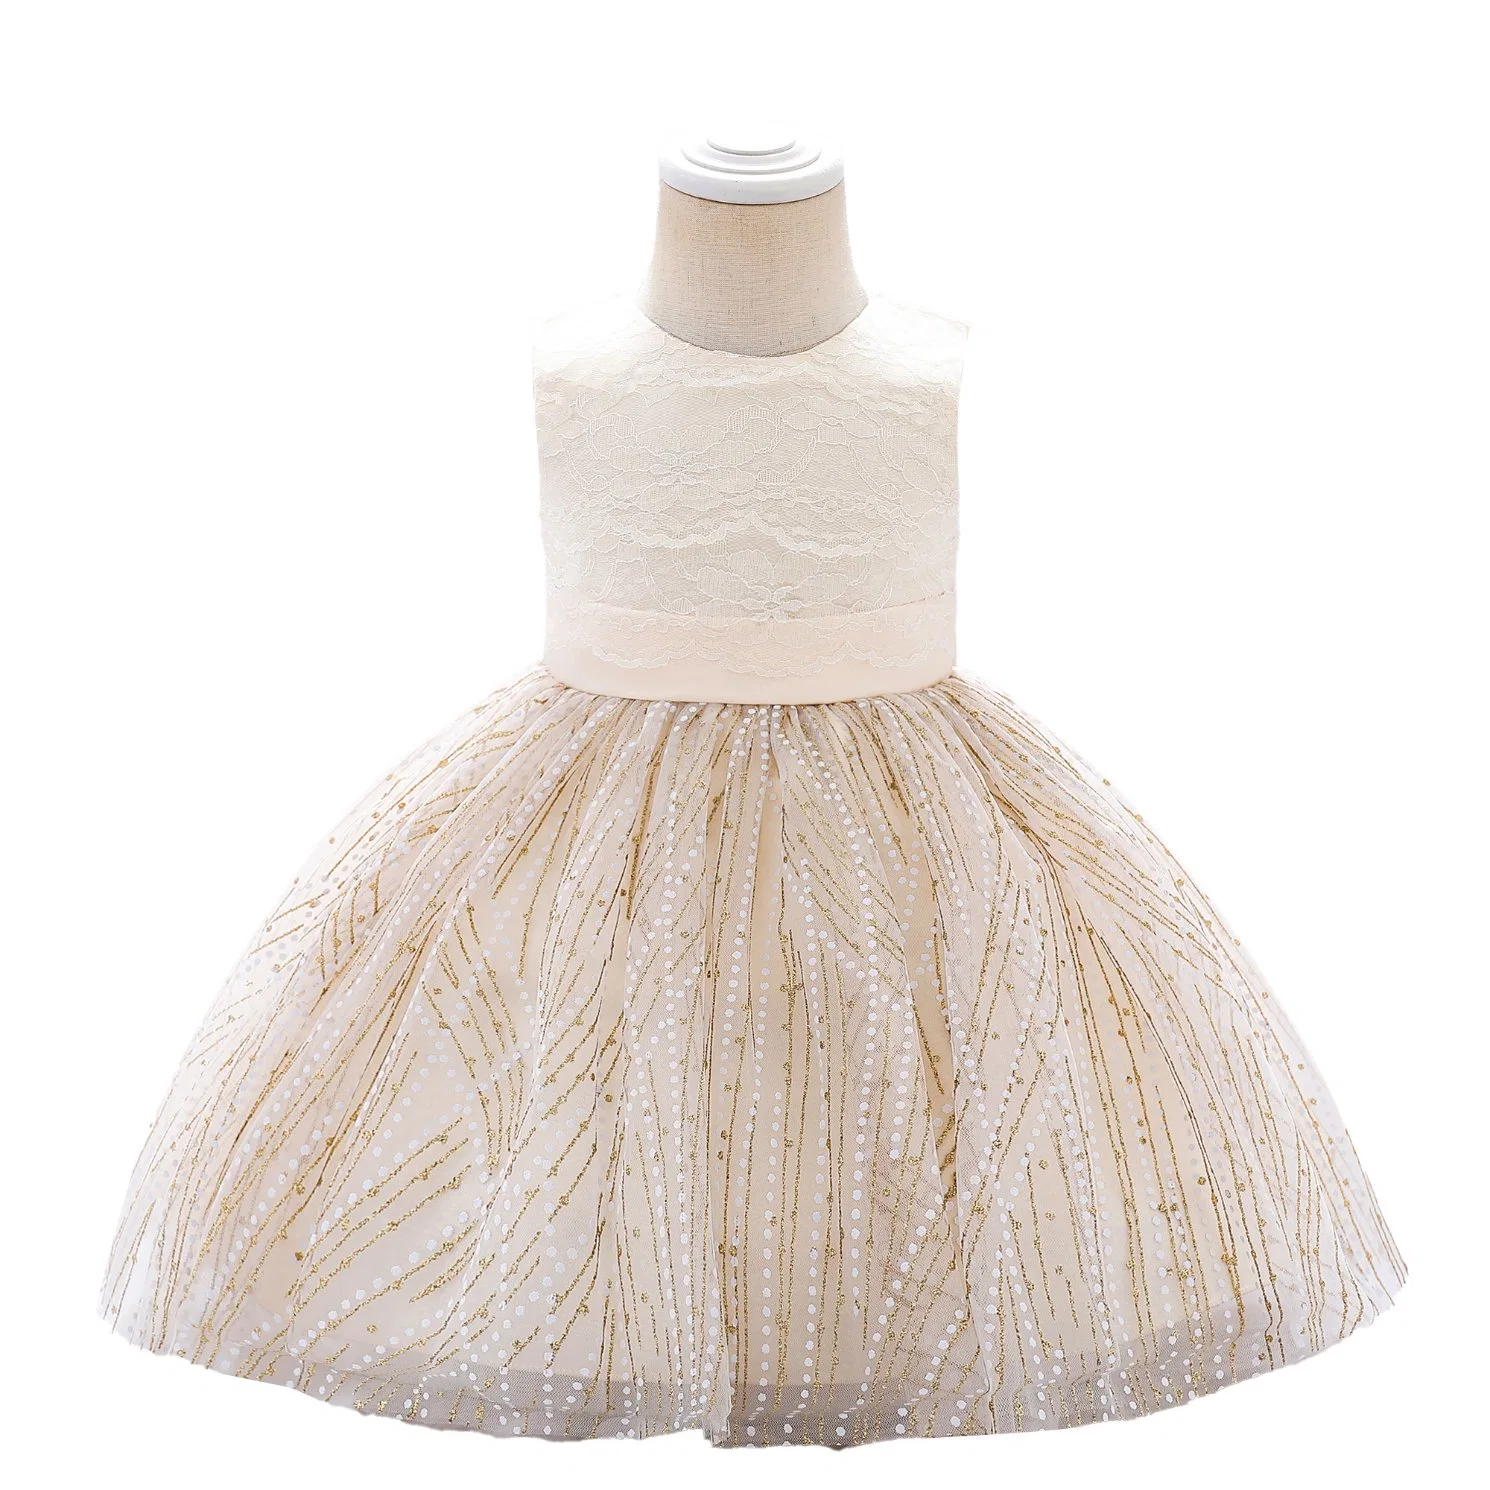 Children's Apparel Baby Wear Girls Party Garment Fluffy Ball Gown Princess Frock Kids Sweet Dress